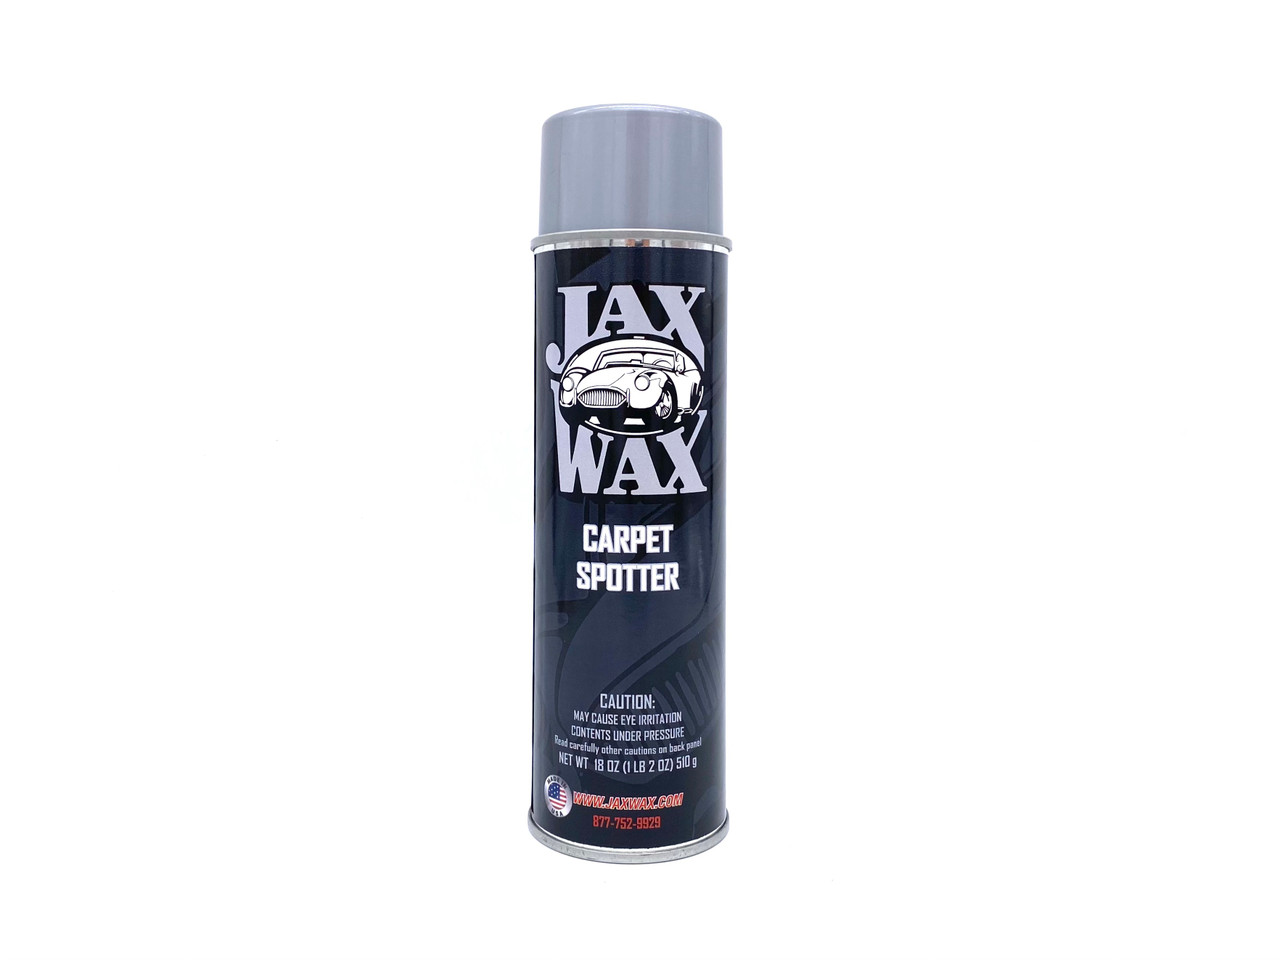 Jax Wax Carpet spotter